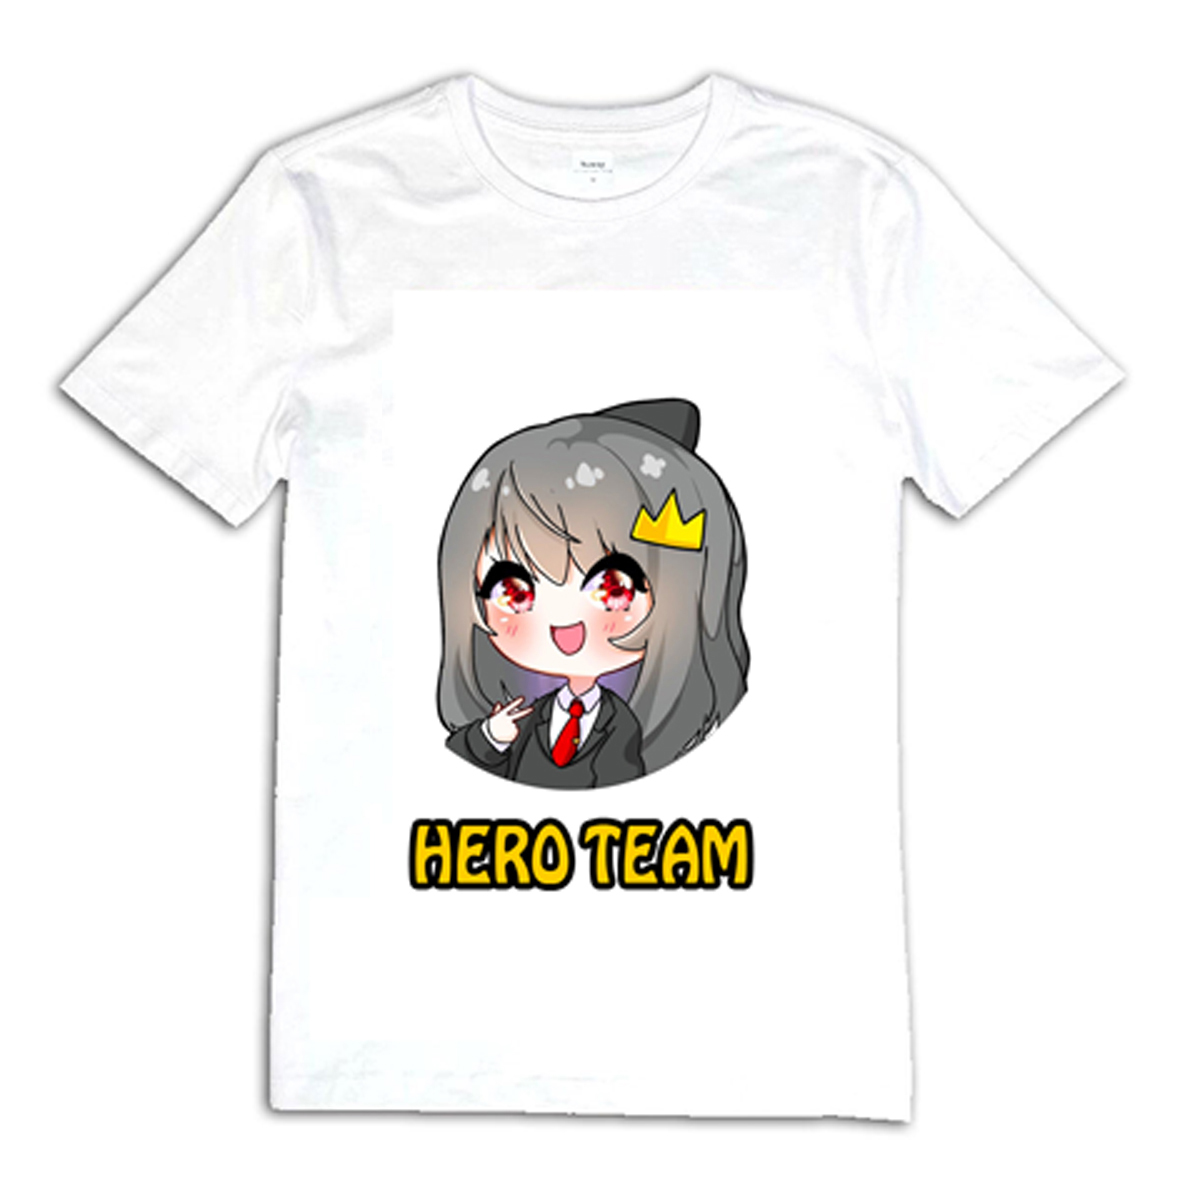 Áo phông Hero Team Sammy Đào là một trong những thiết kế độc đáo và sáng tạo nhất cho fan của Sammy Đào. Với màu sắc bắt mắt và chất liệu thoáng mát, áo phông này sẽ giúp bạn thể hiện tình yêu đối với Sammy một cách bùng cháy.